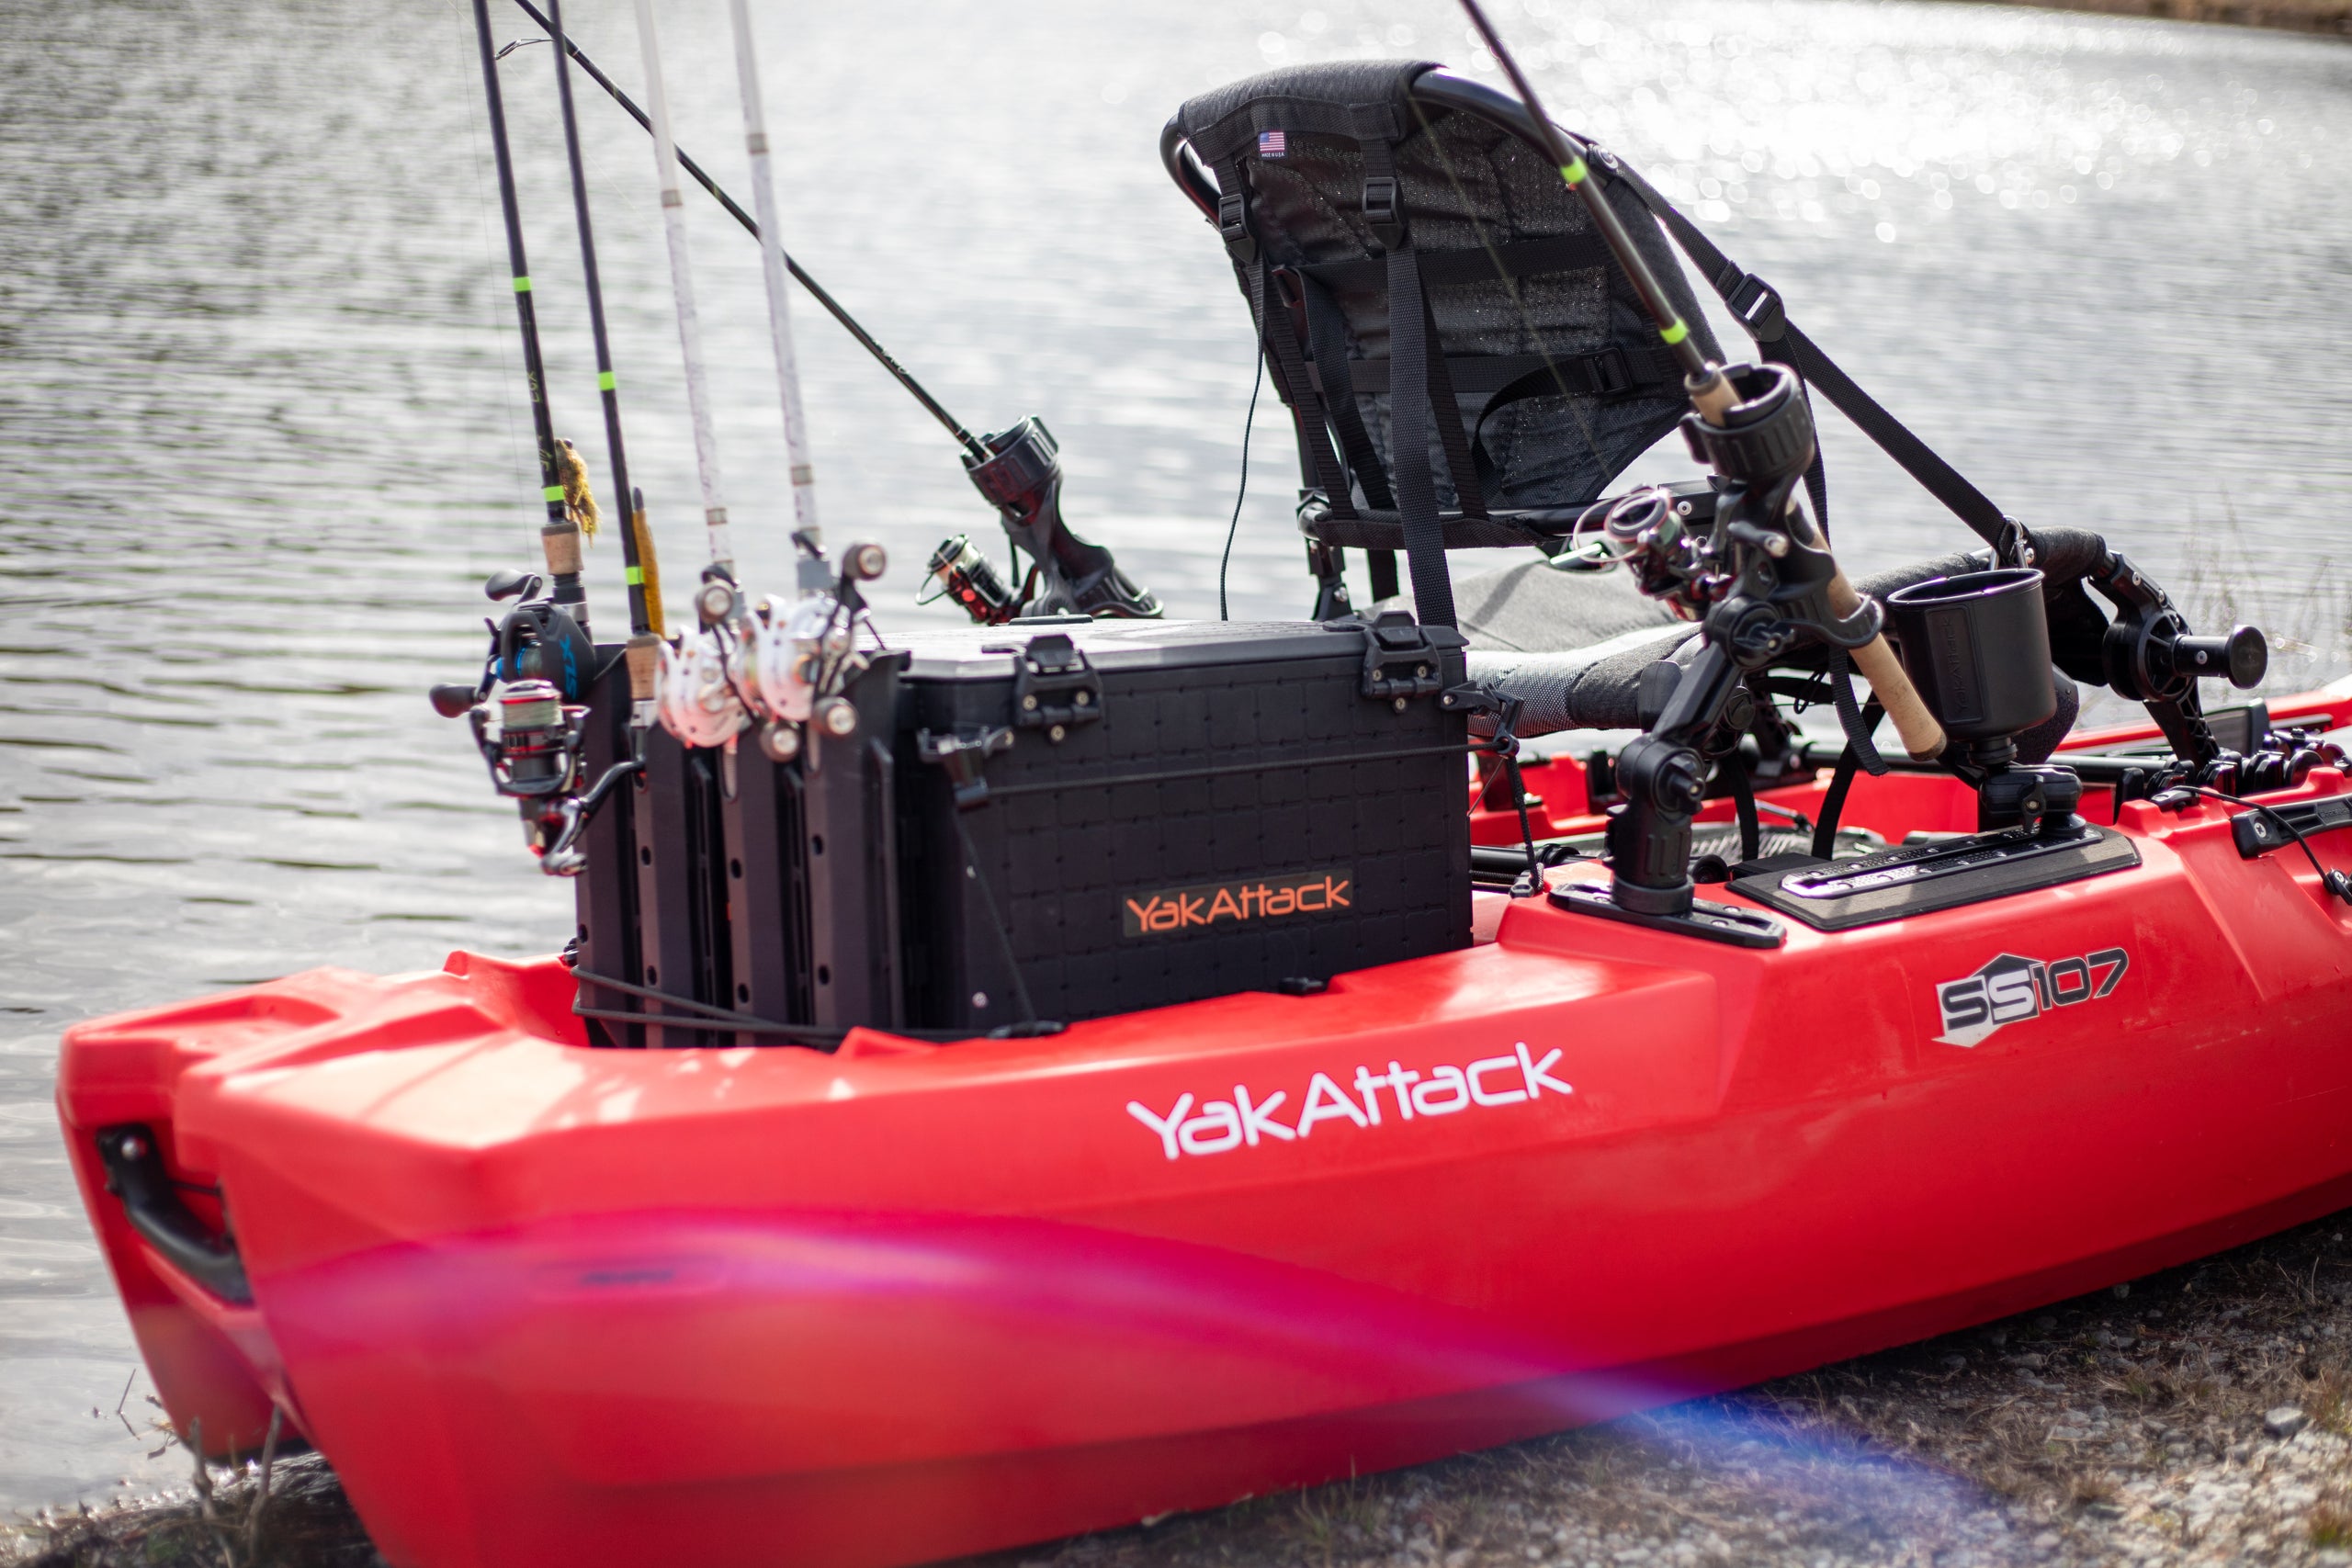 BlackPak Pro Kayak Fishing Crate - 16 x 16